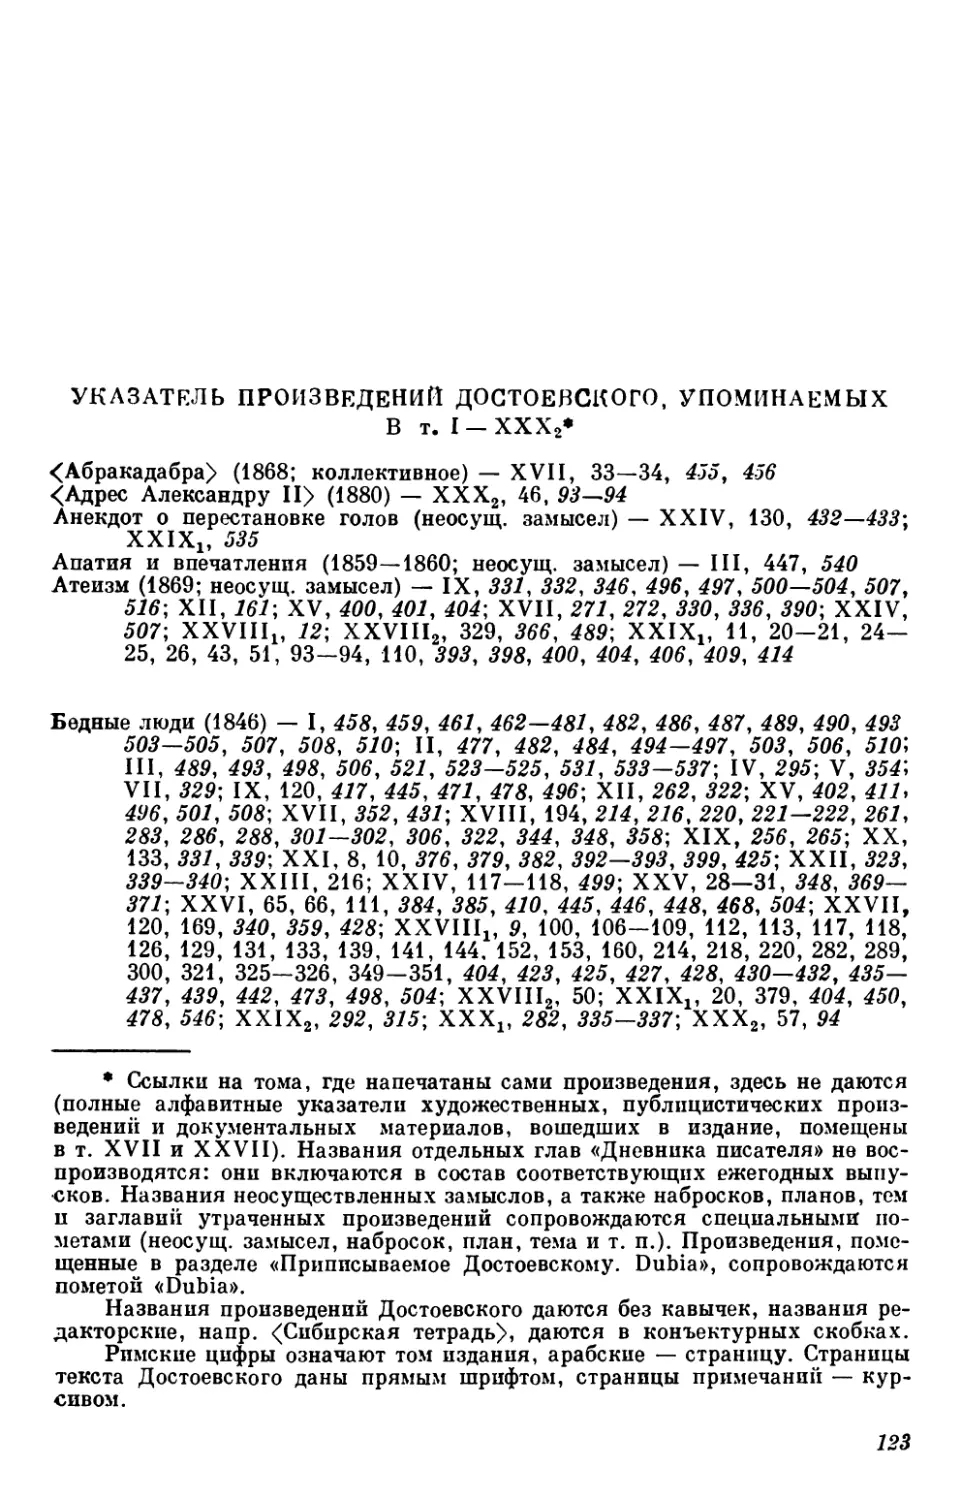 Указатель произведений Достоевского, упоминаемых в т. I—ХХХ2